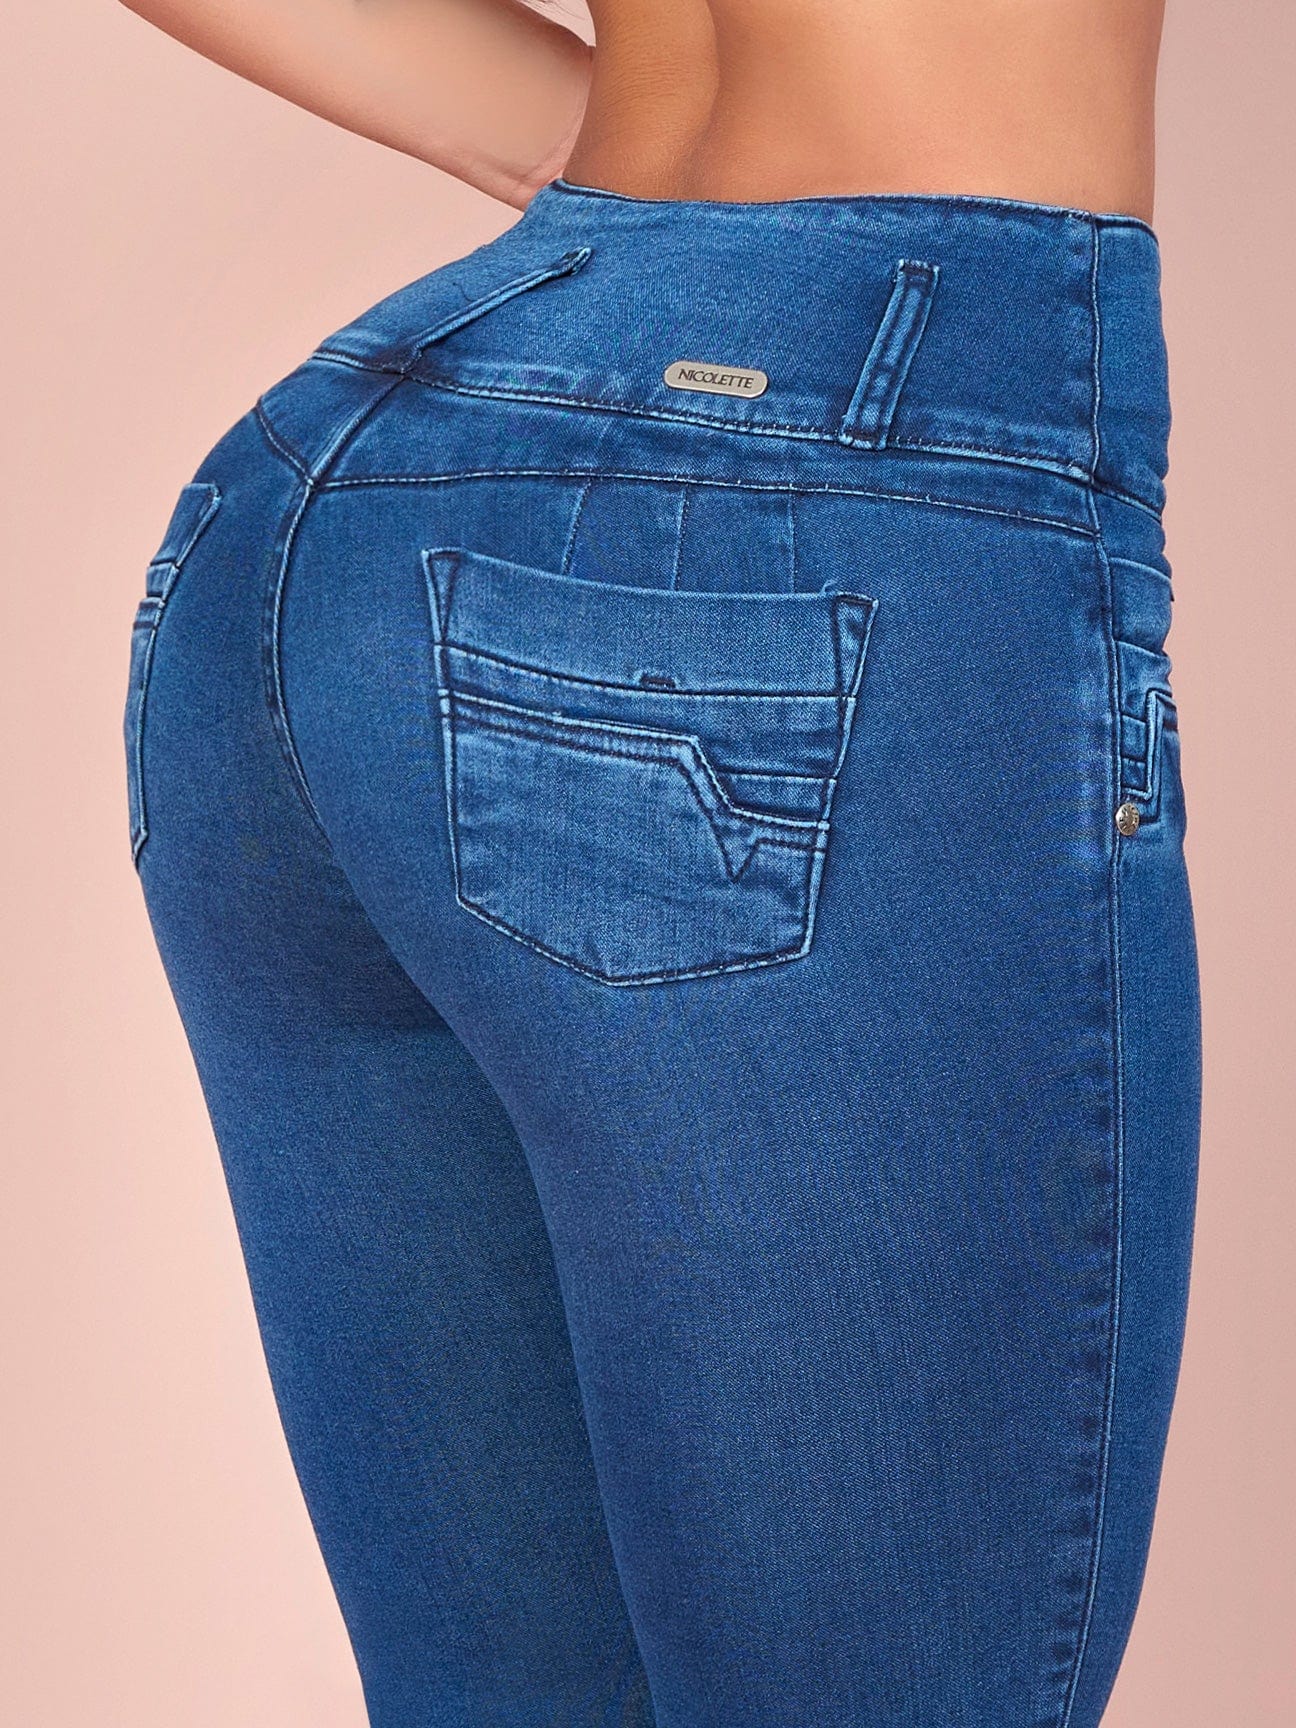 Jeans, Brazilian Butt Lift Jeans